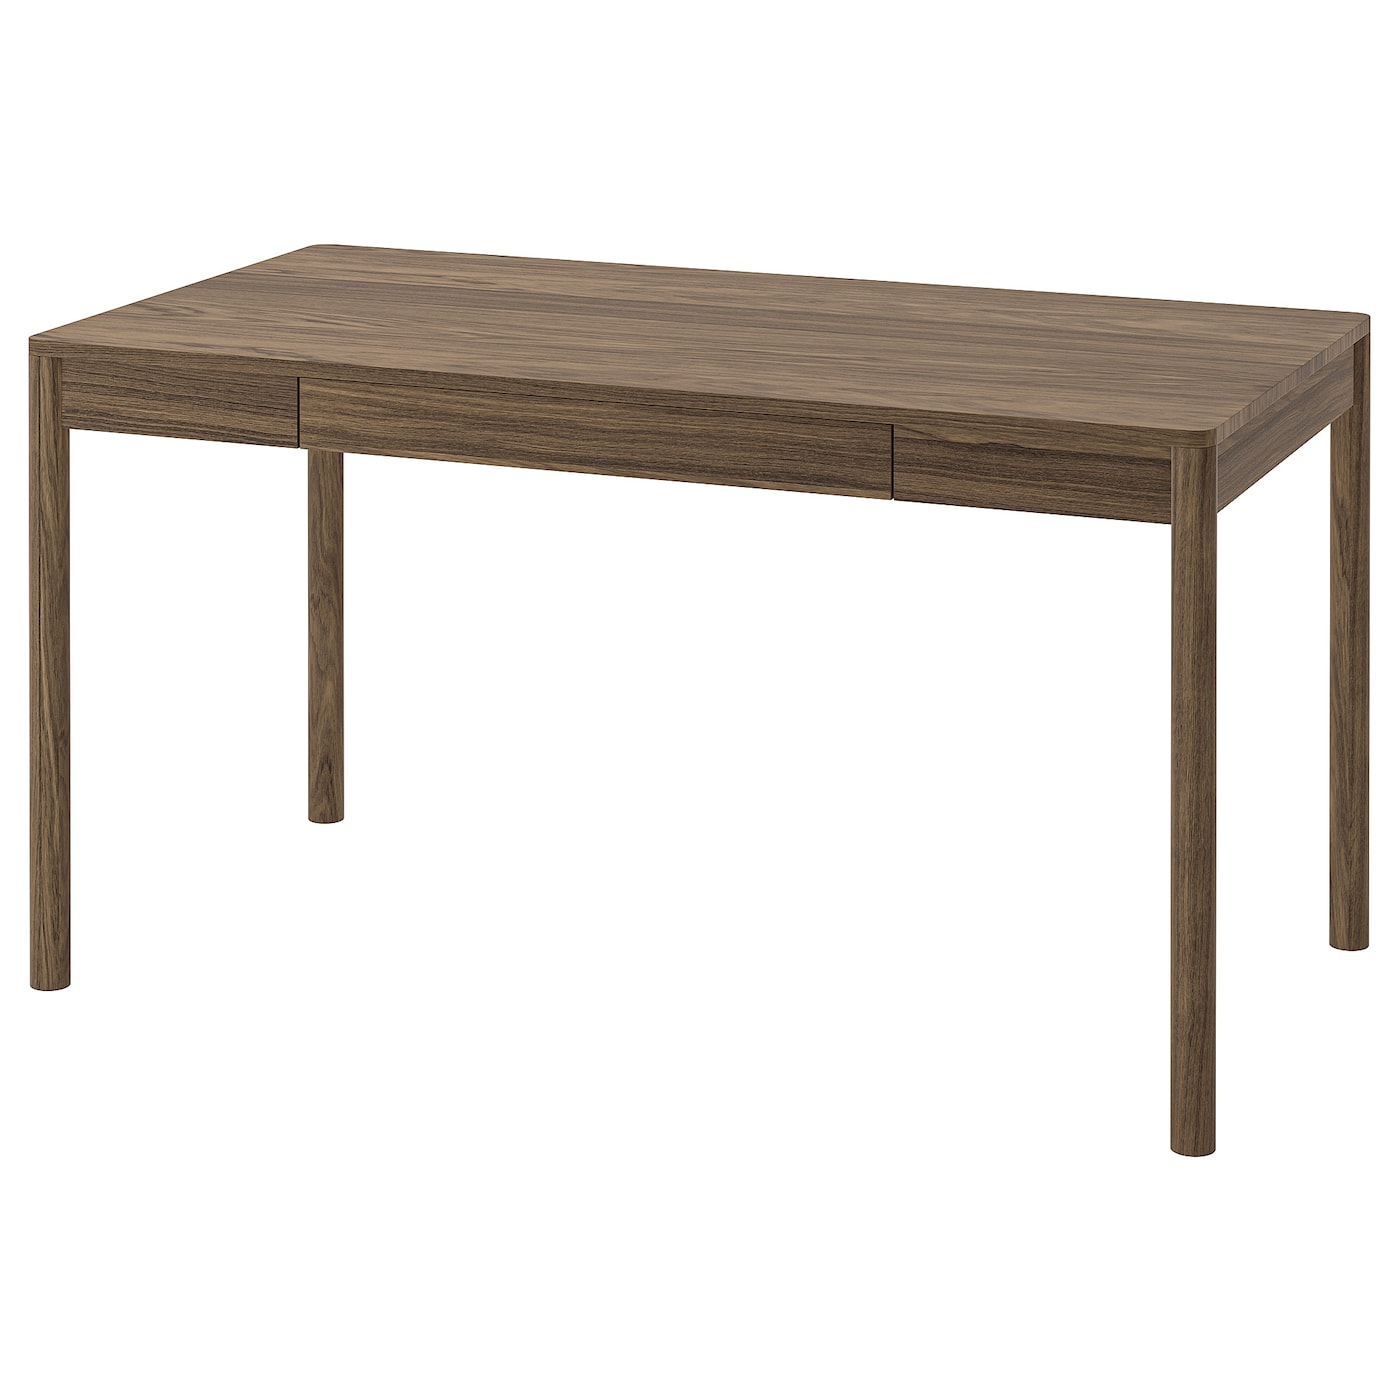 Письменный стол - IKEA TONSTAD, 140x75 см, коричневый дубовый шпон, ТОНСТАД ИКЕА